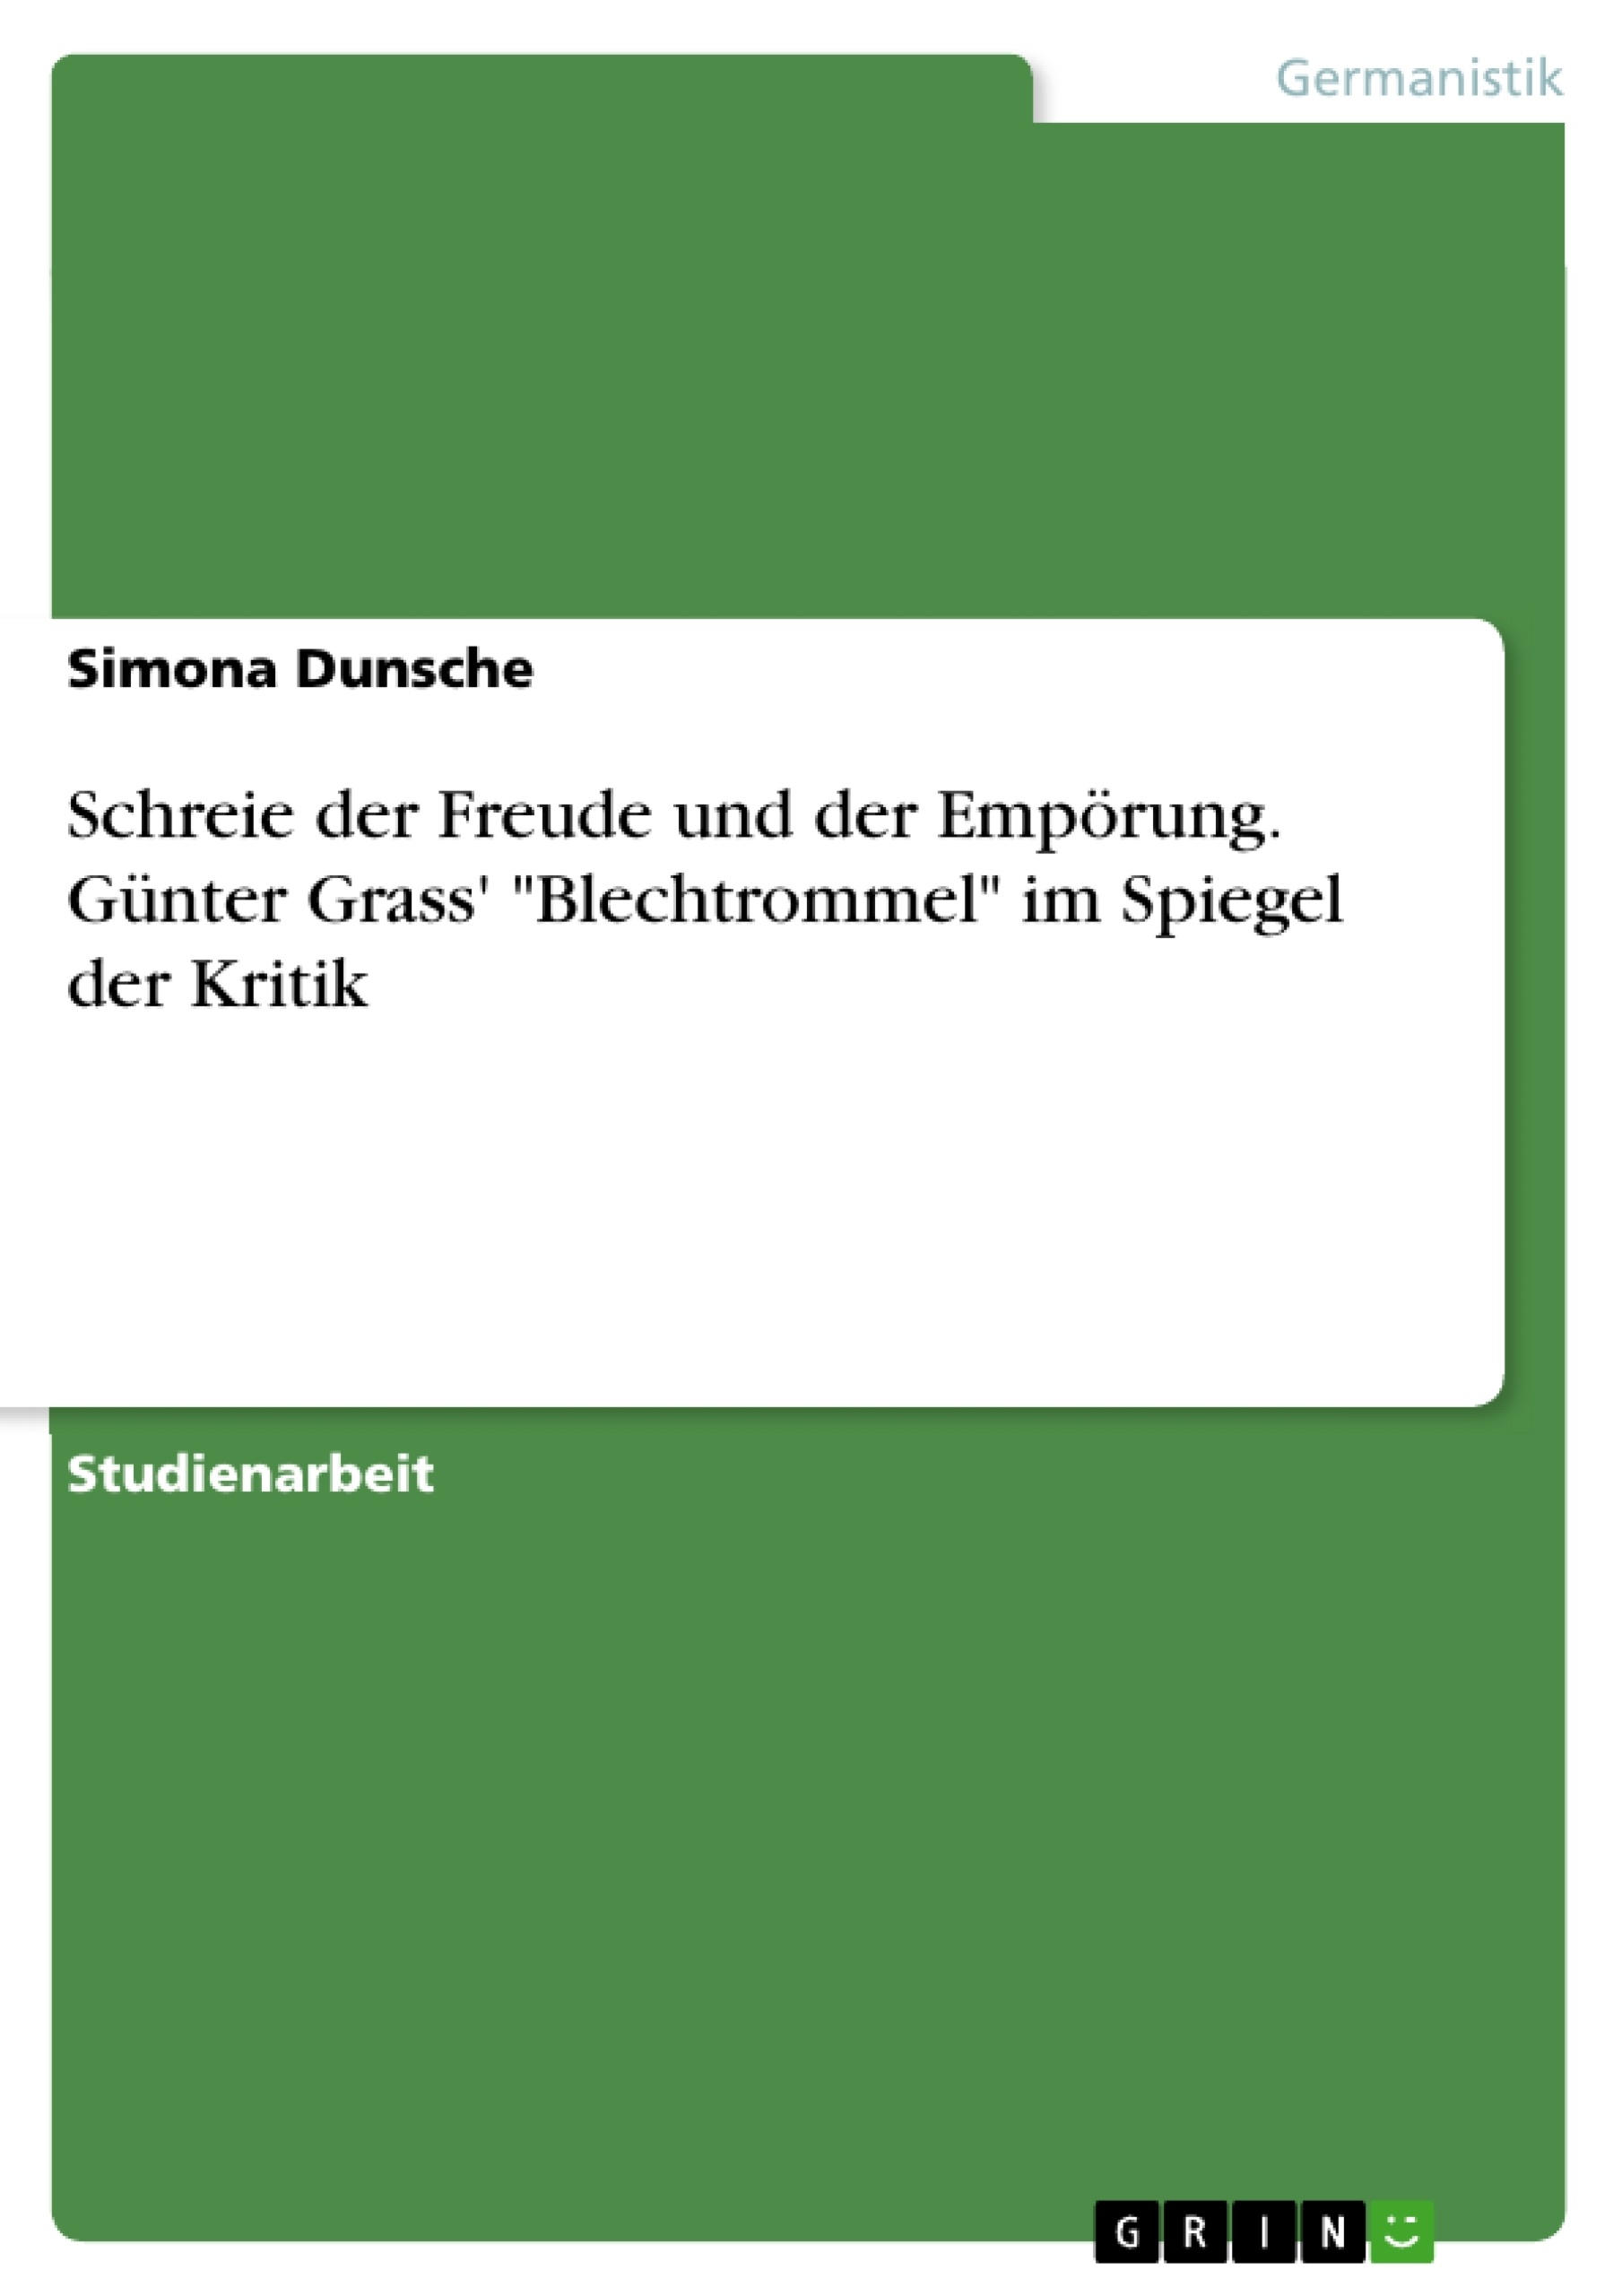 Título: Schreie der Freude und der Empörung. Günter Grass' "Blechtrommel" im Spiegel der Kritik